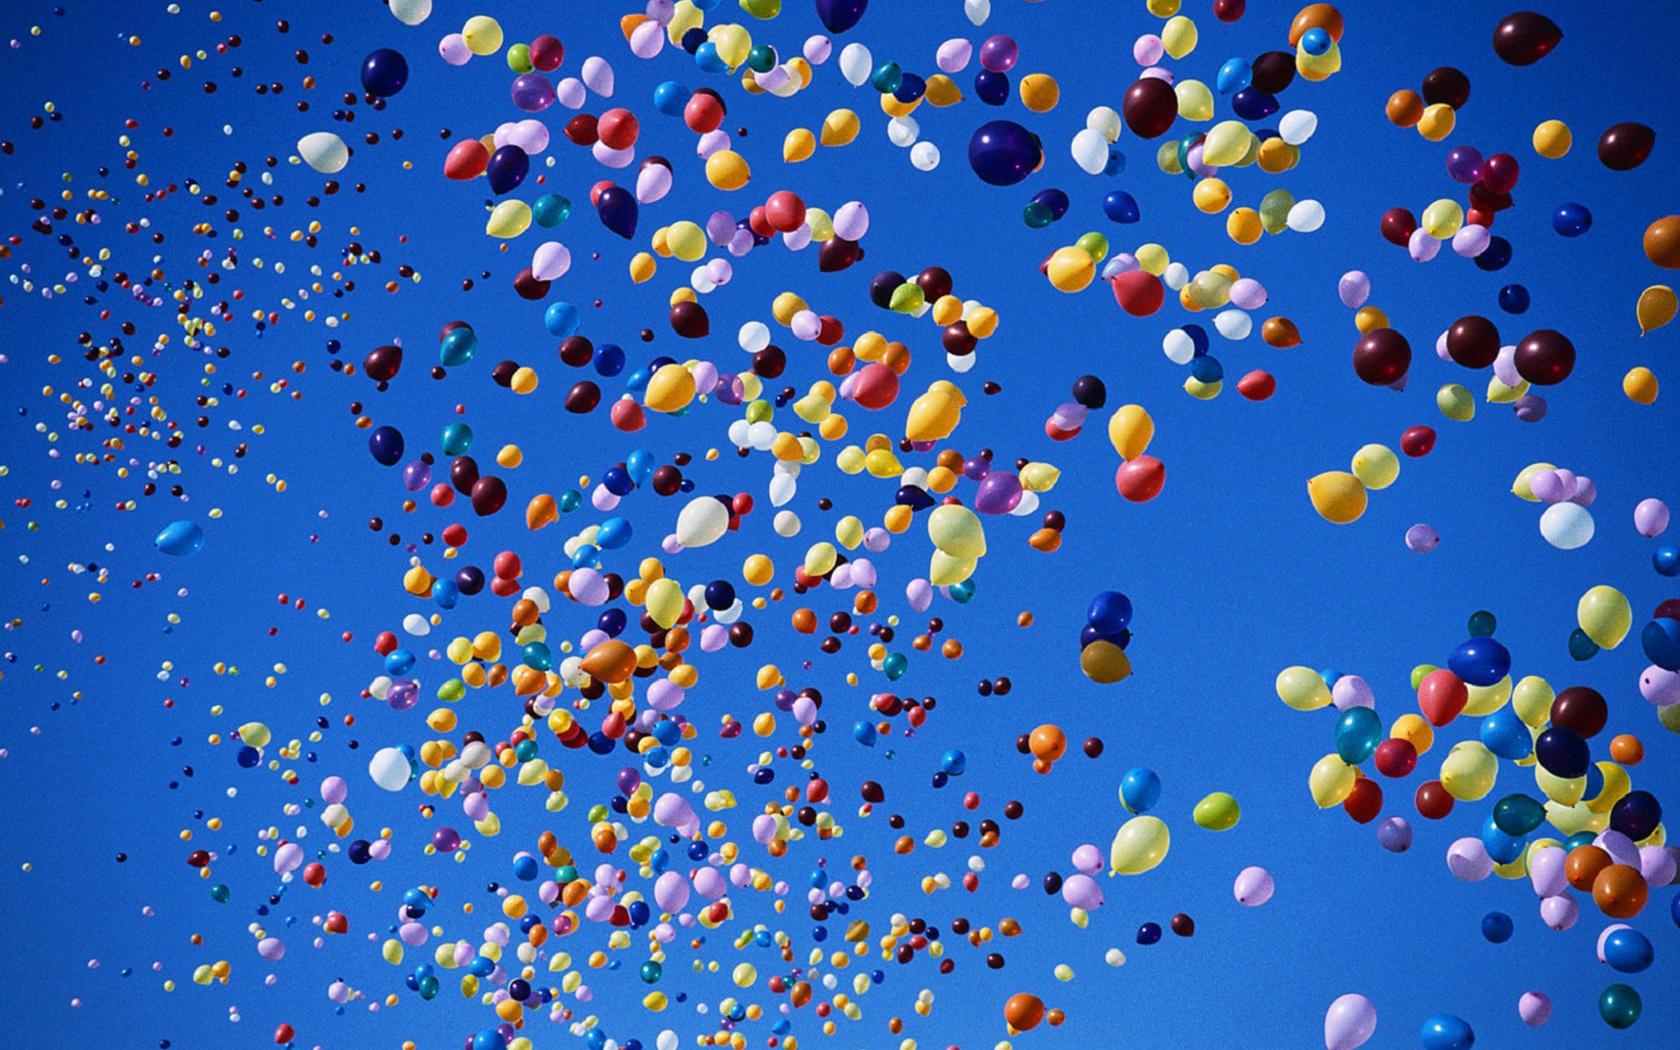 Запуск воздушных шаров в Москве. Запуск шариков в небо: цена, фото | Студия  декора Анастасии Даниловой